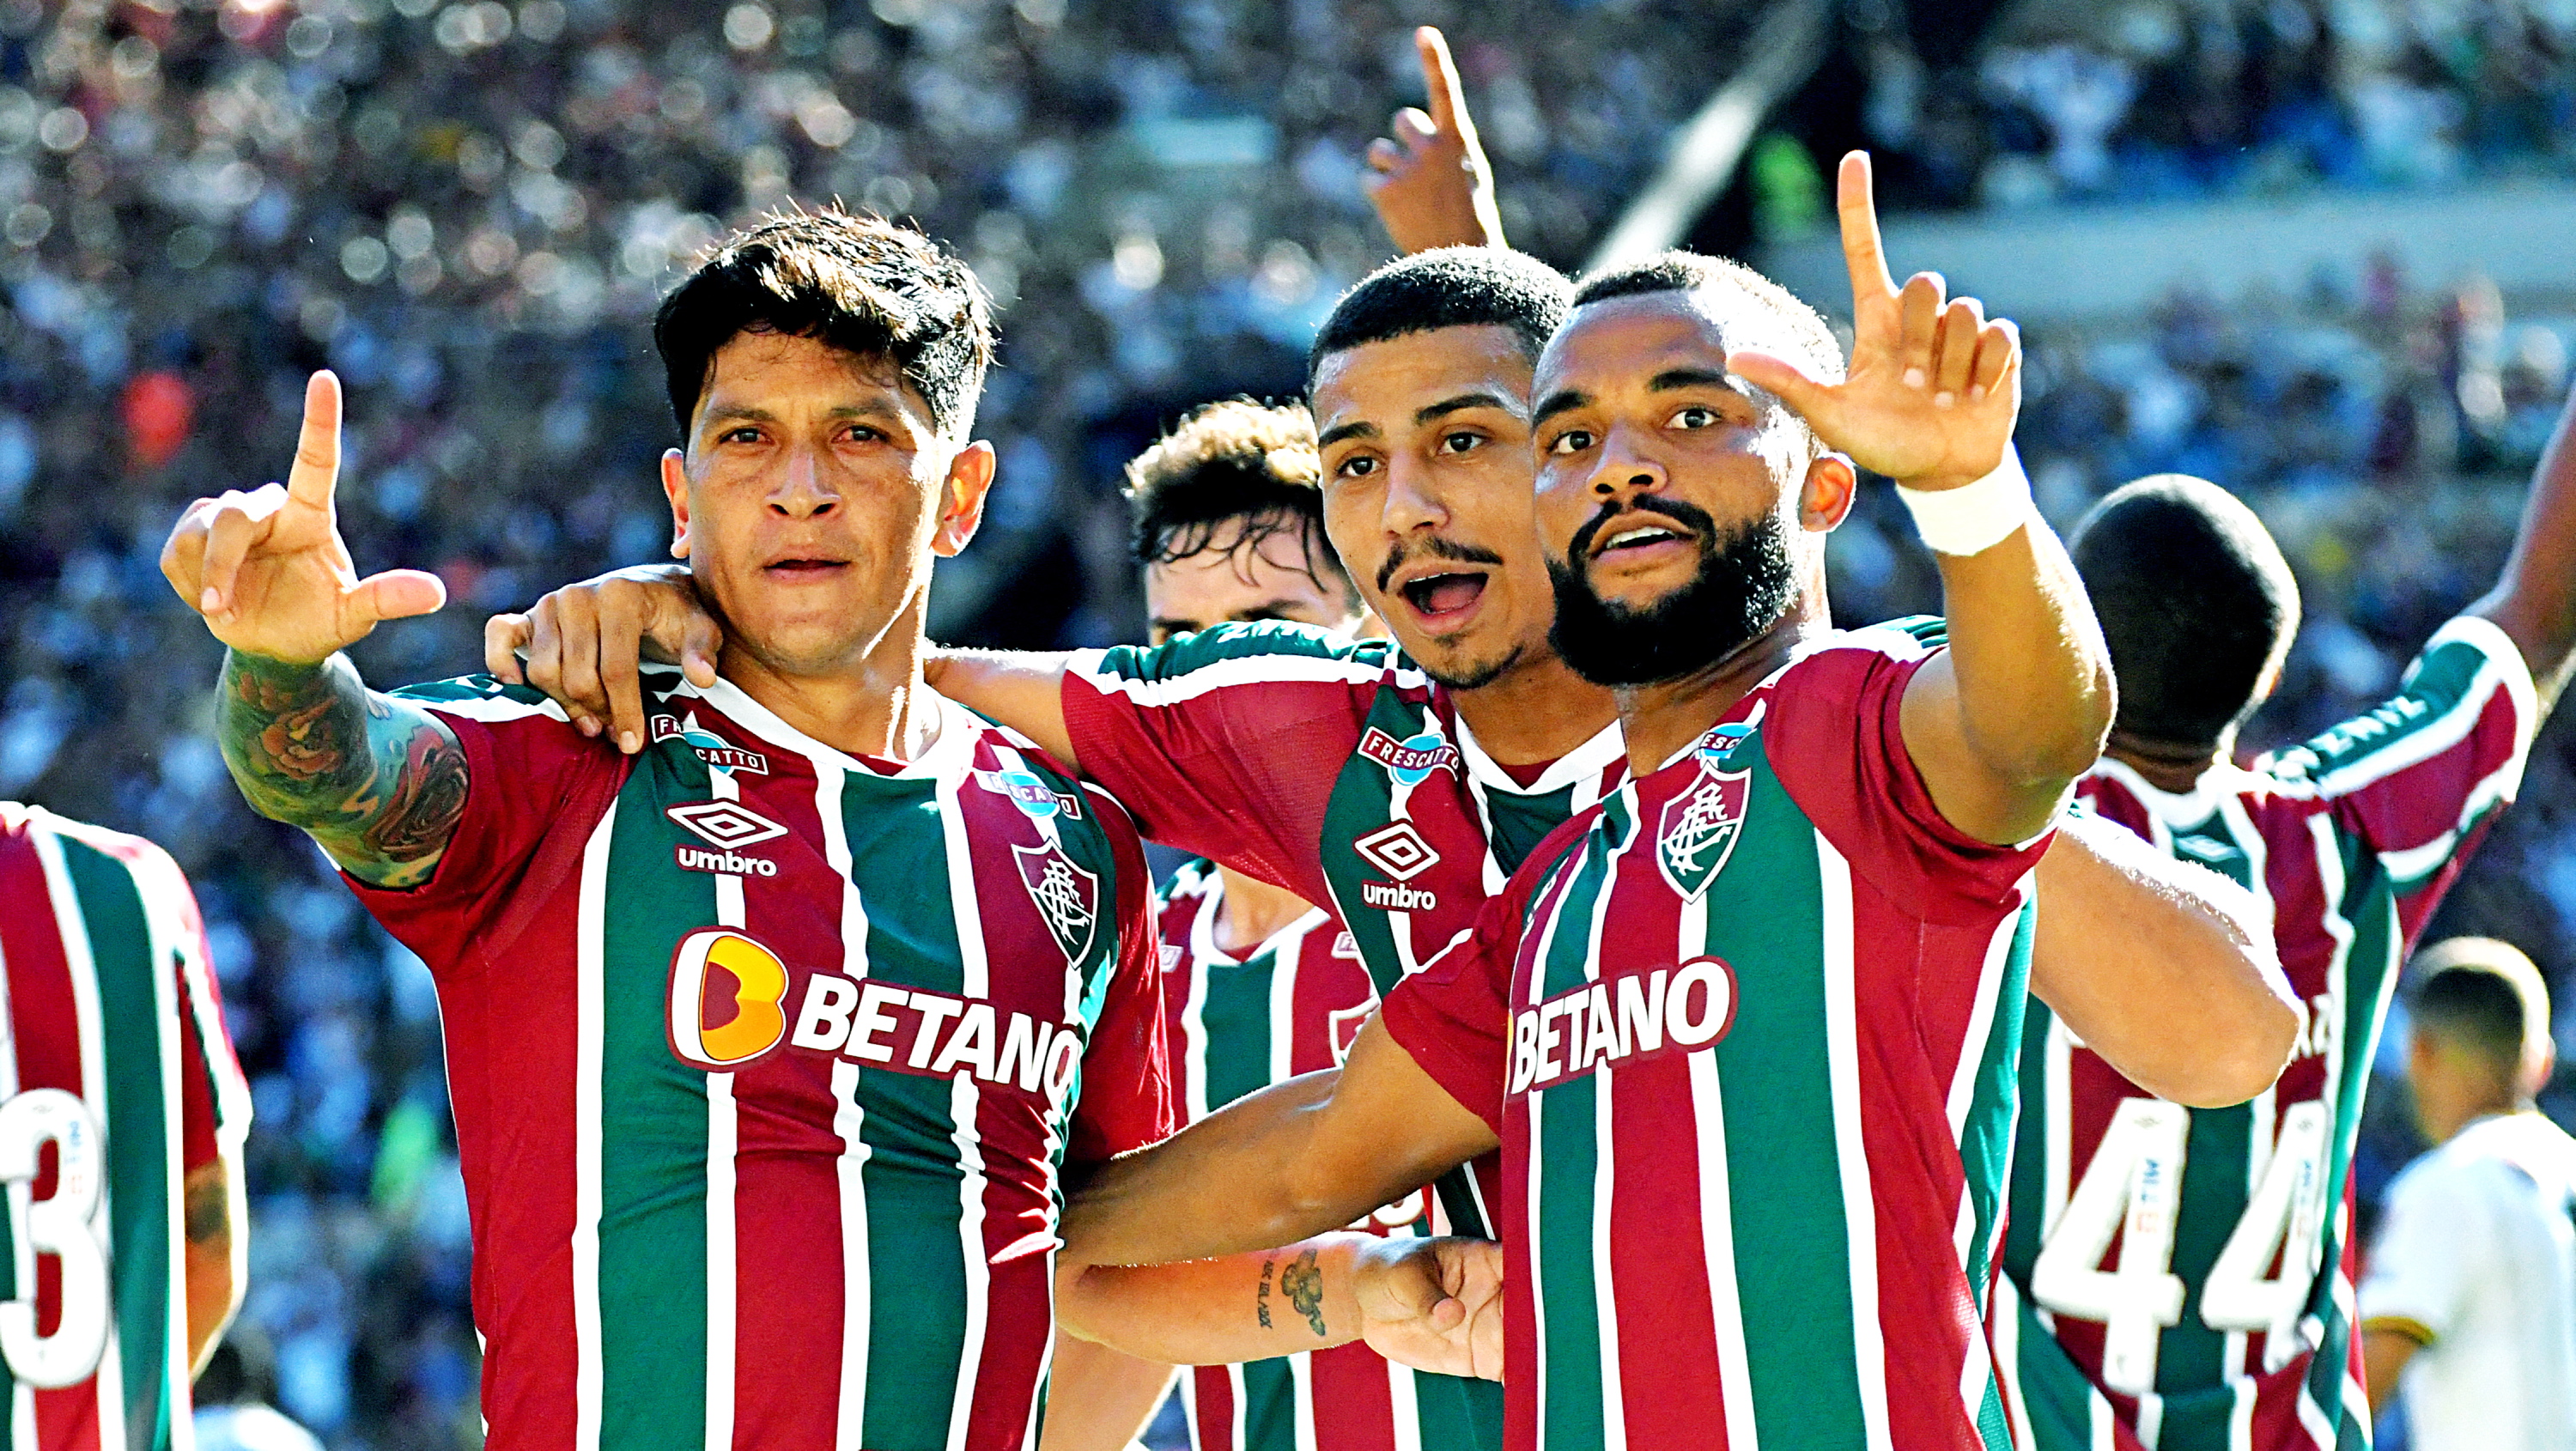 Neste ritmo, Fluminense de Diniz é candidato a levantar muitas taças